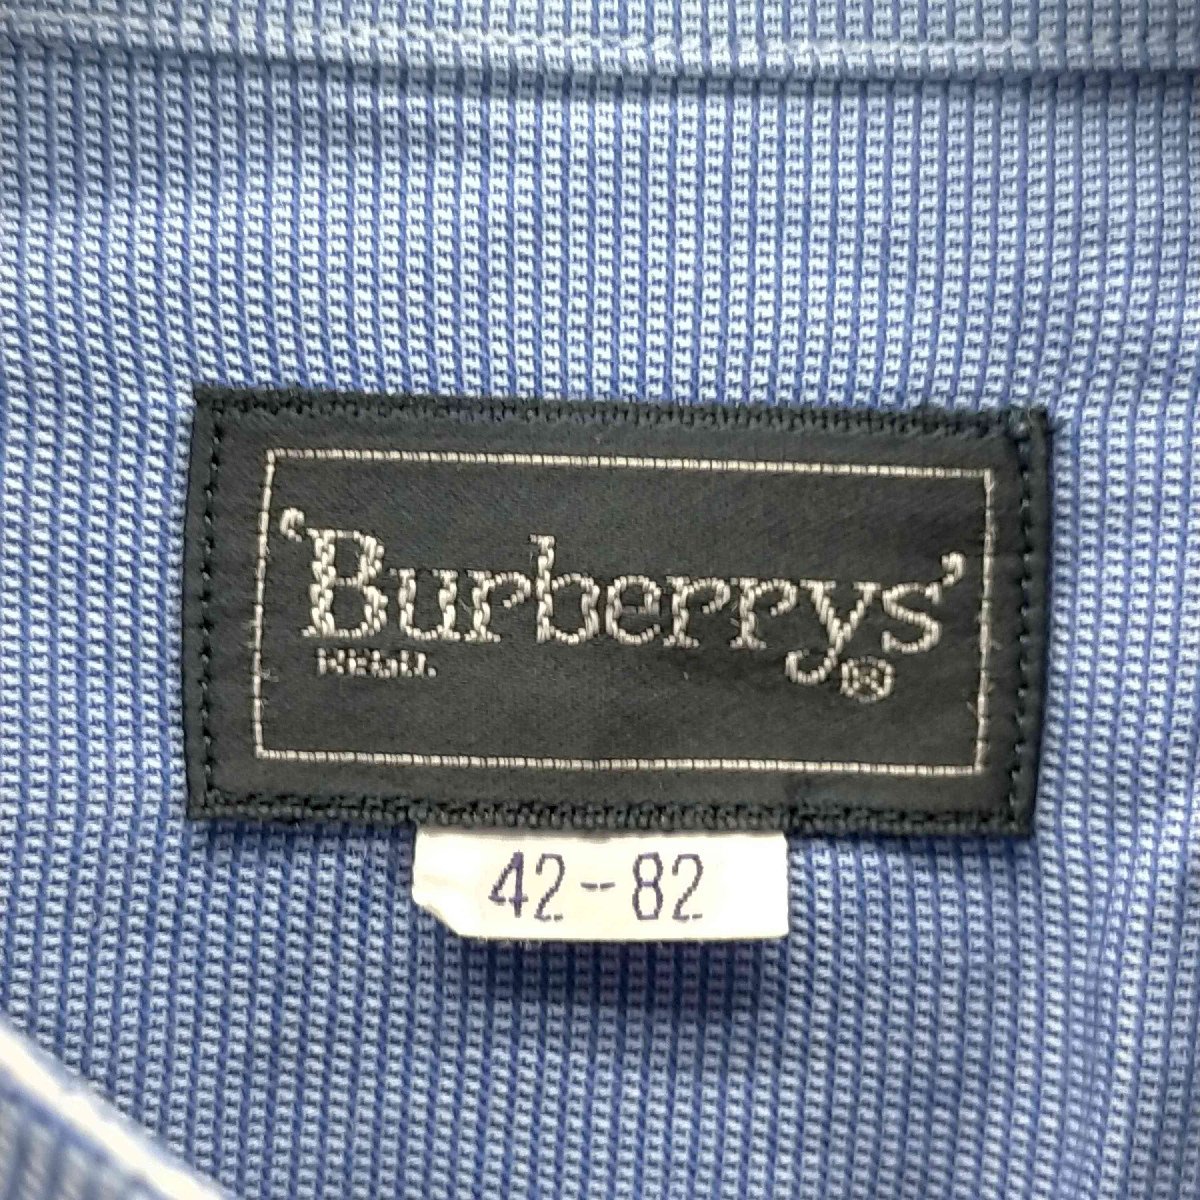 BURBERRYS(バーバリーズ) L/S バンドカラーシャツ メンズ 42-82 中古 古着 0308_画像6